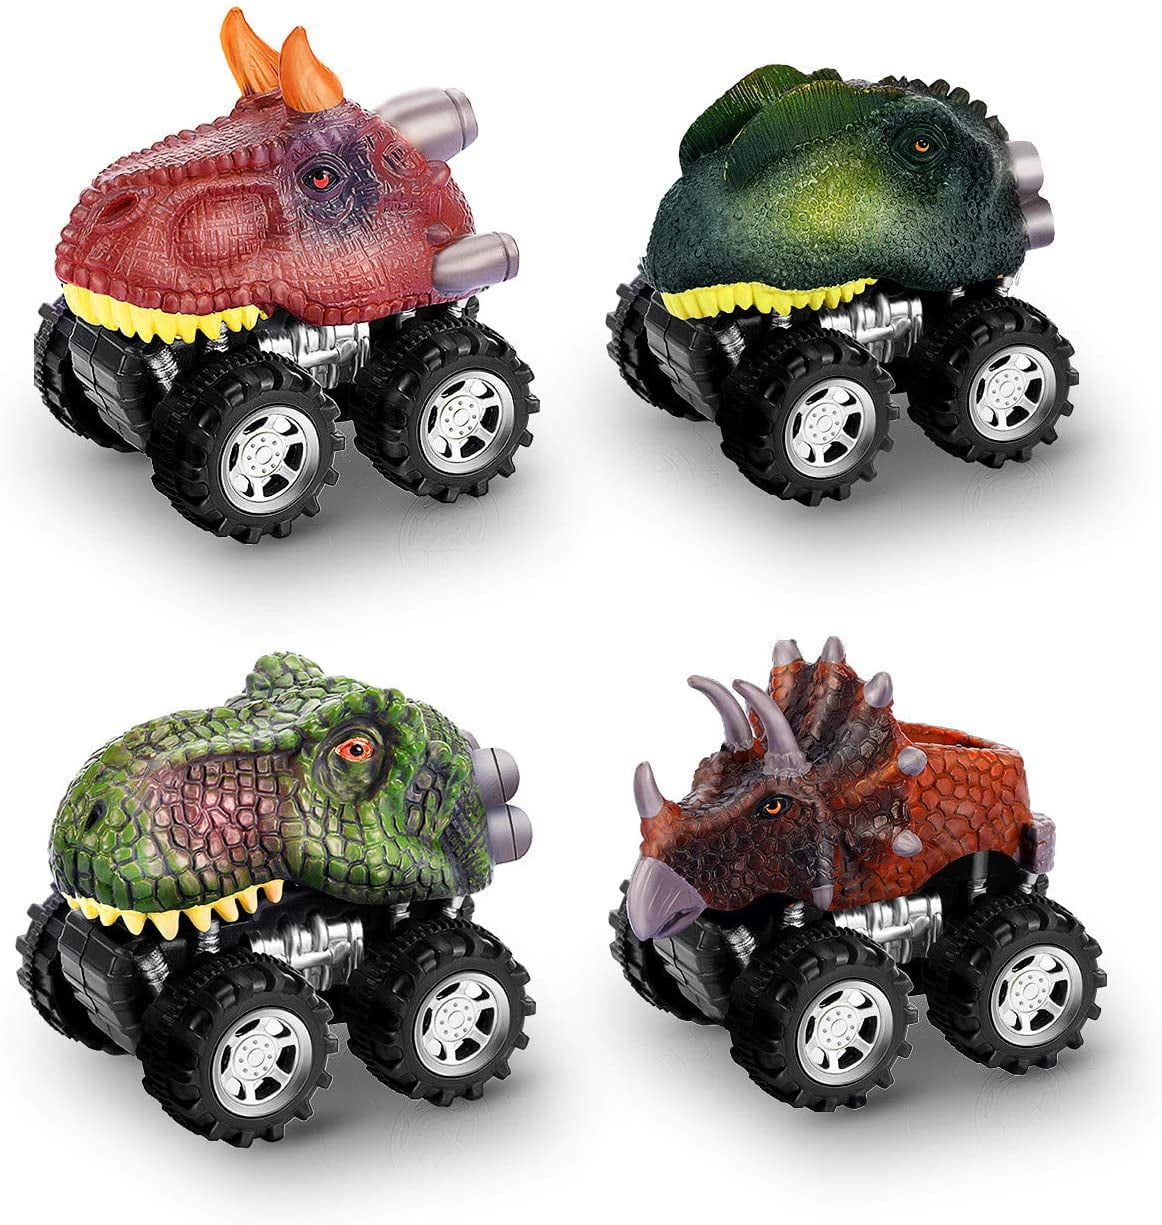 OttoyDinosaur Toys for Kids 3-5, 4-Pack Dinosaur Cars for ...